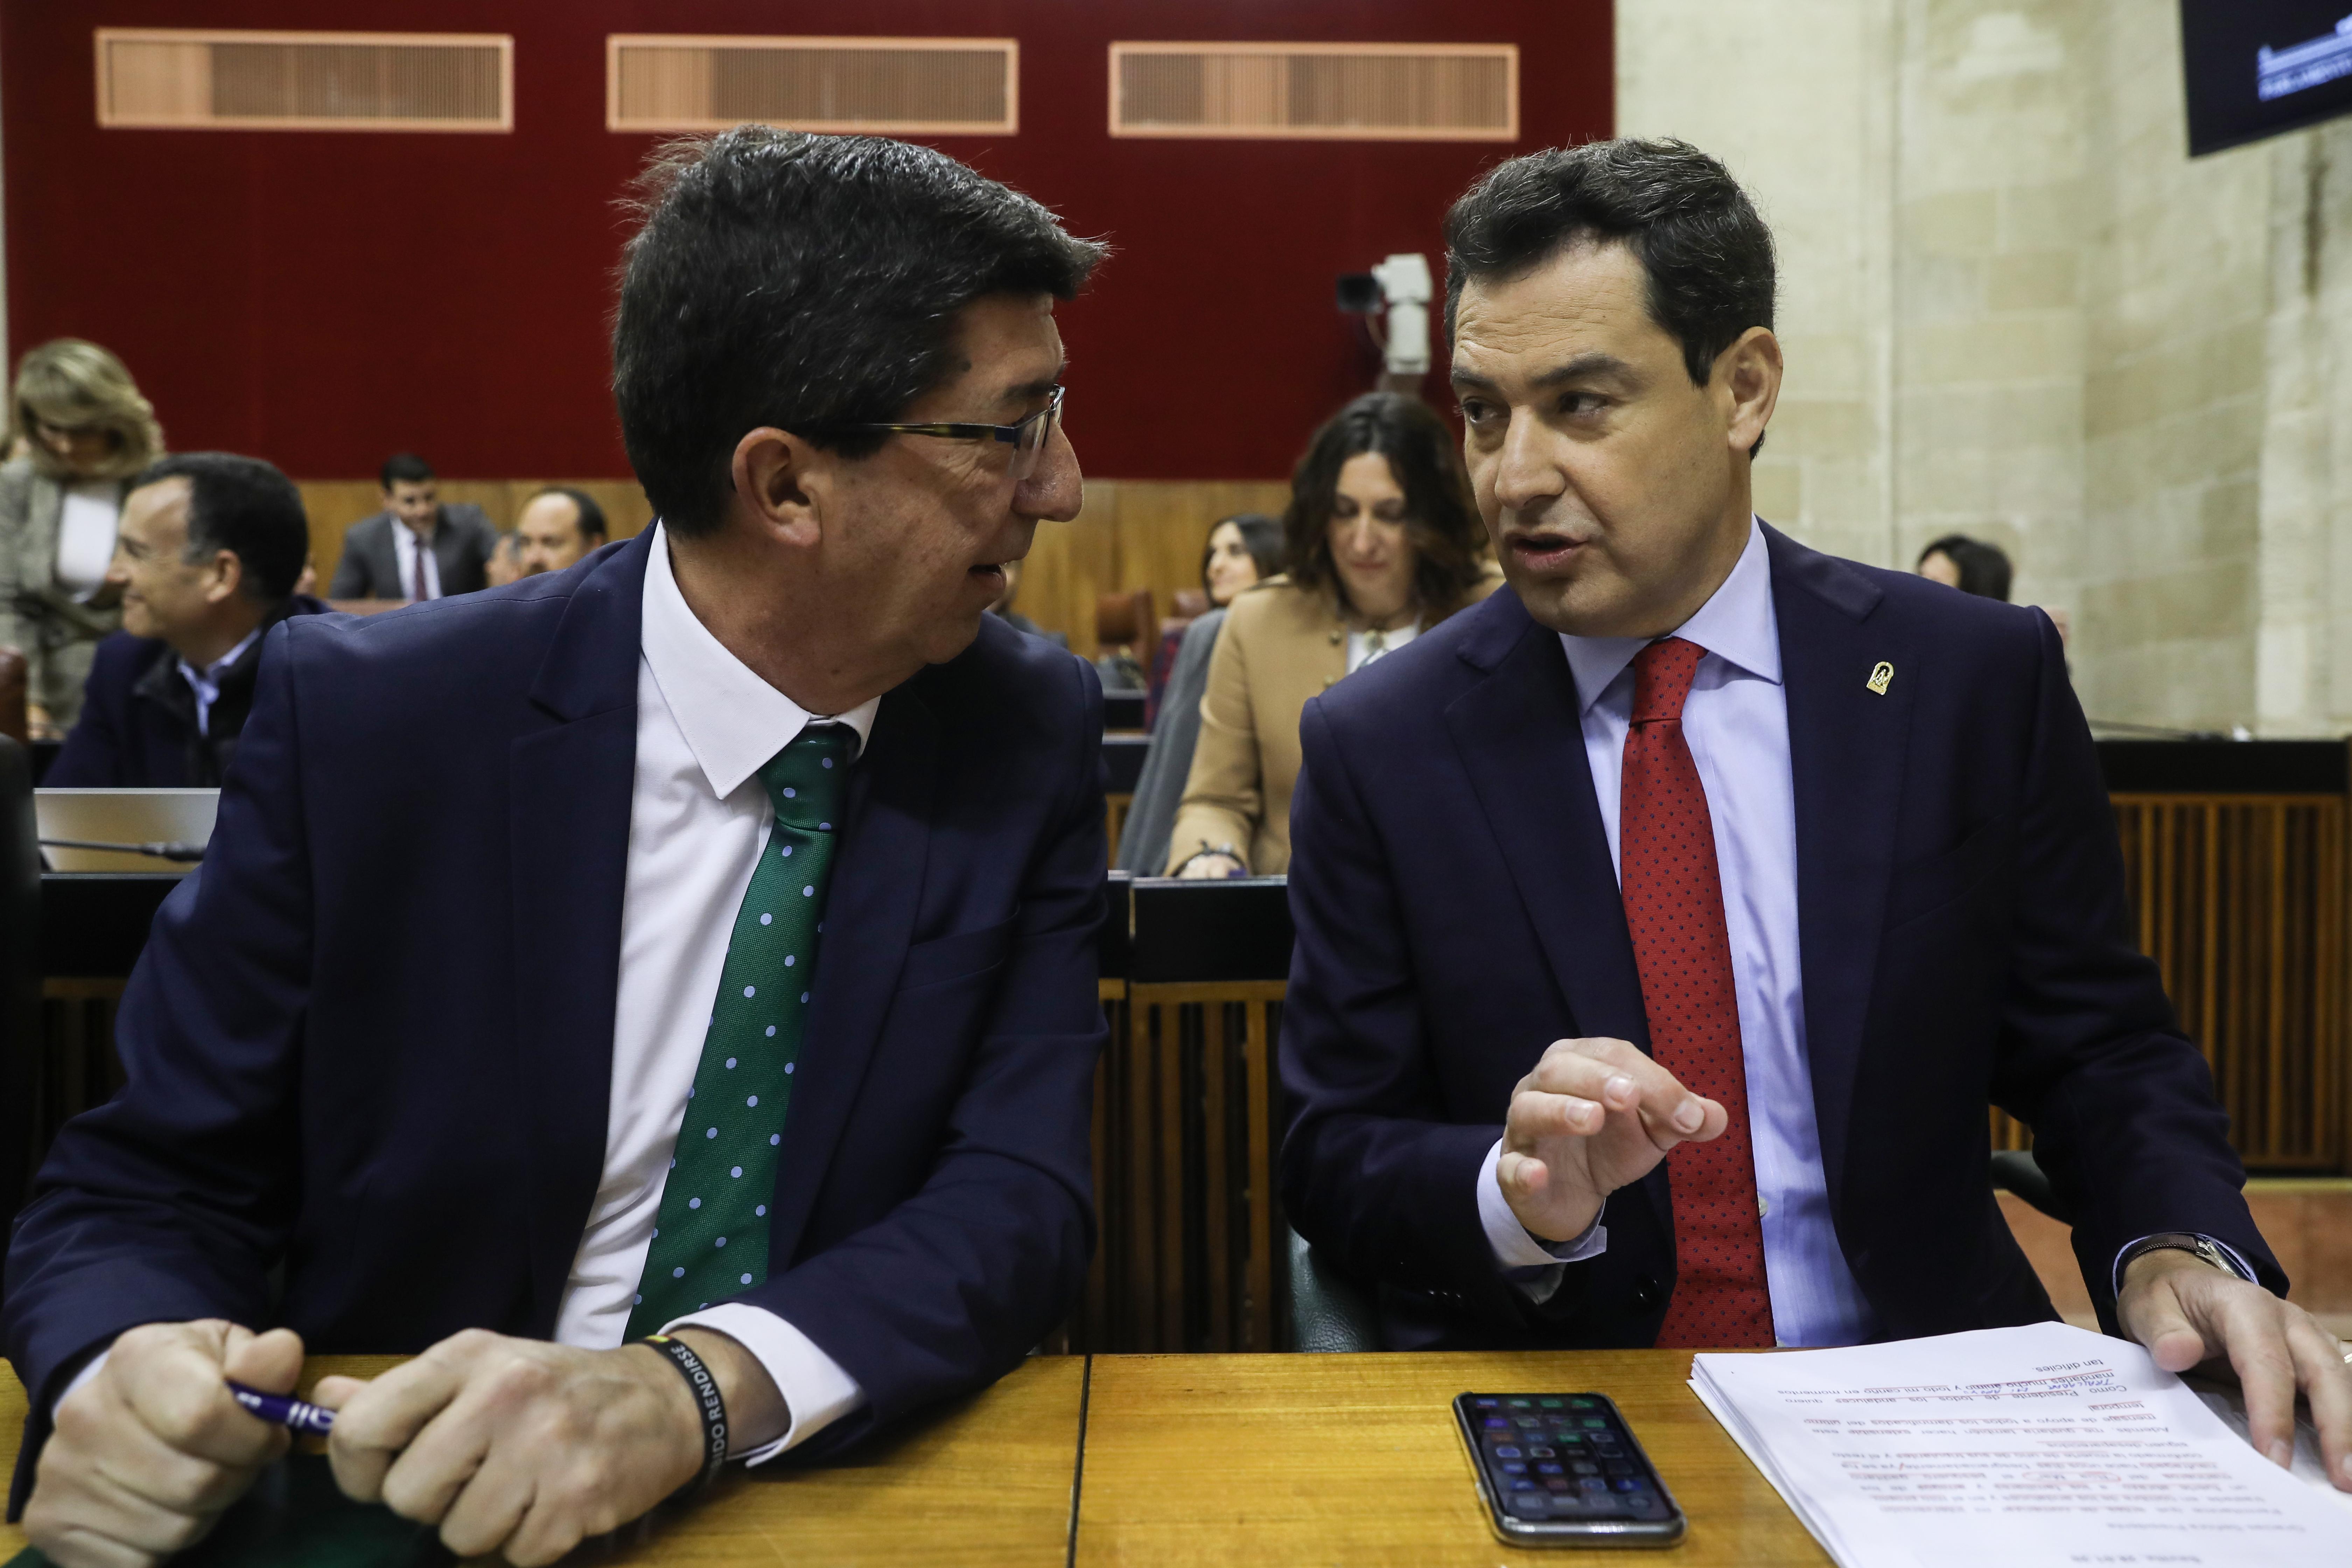 El presidente de la Junta de Andalucía Juanma Moreno junto al vicepresidente de la Junta Juan Marín